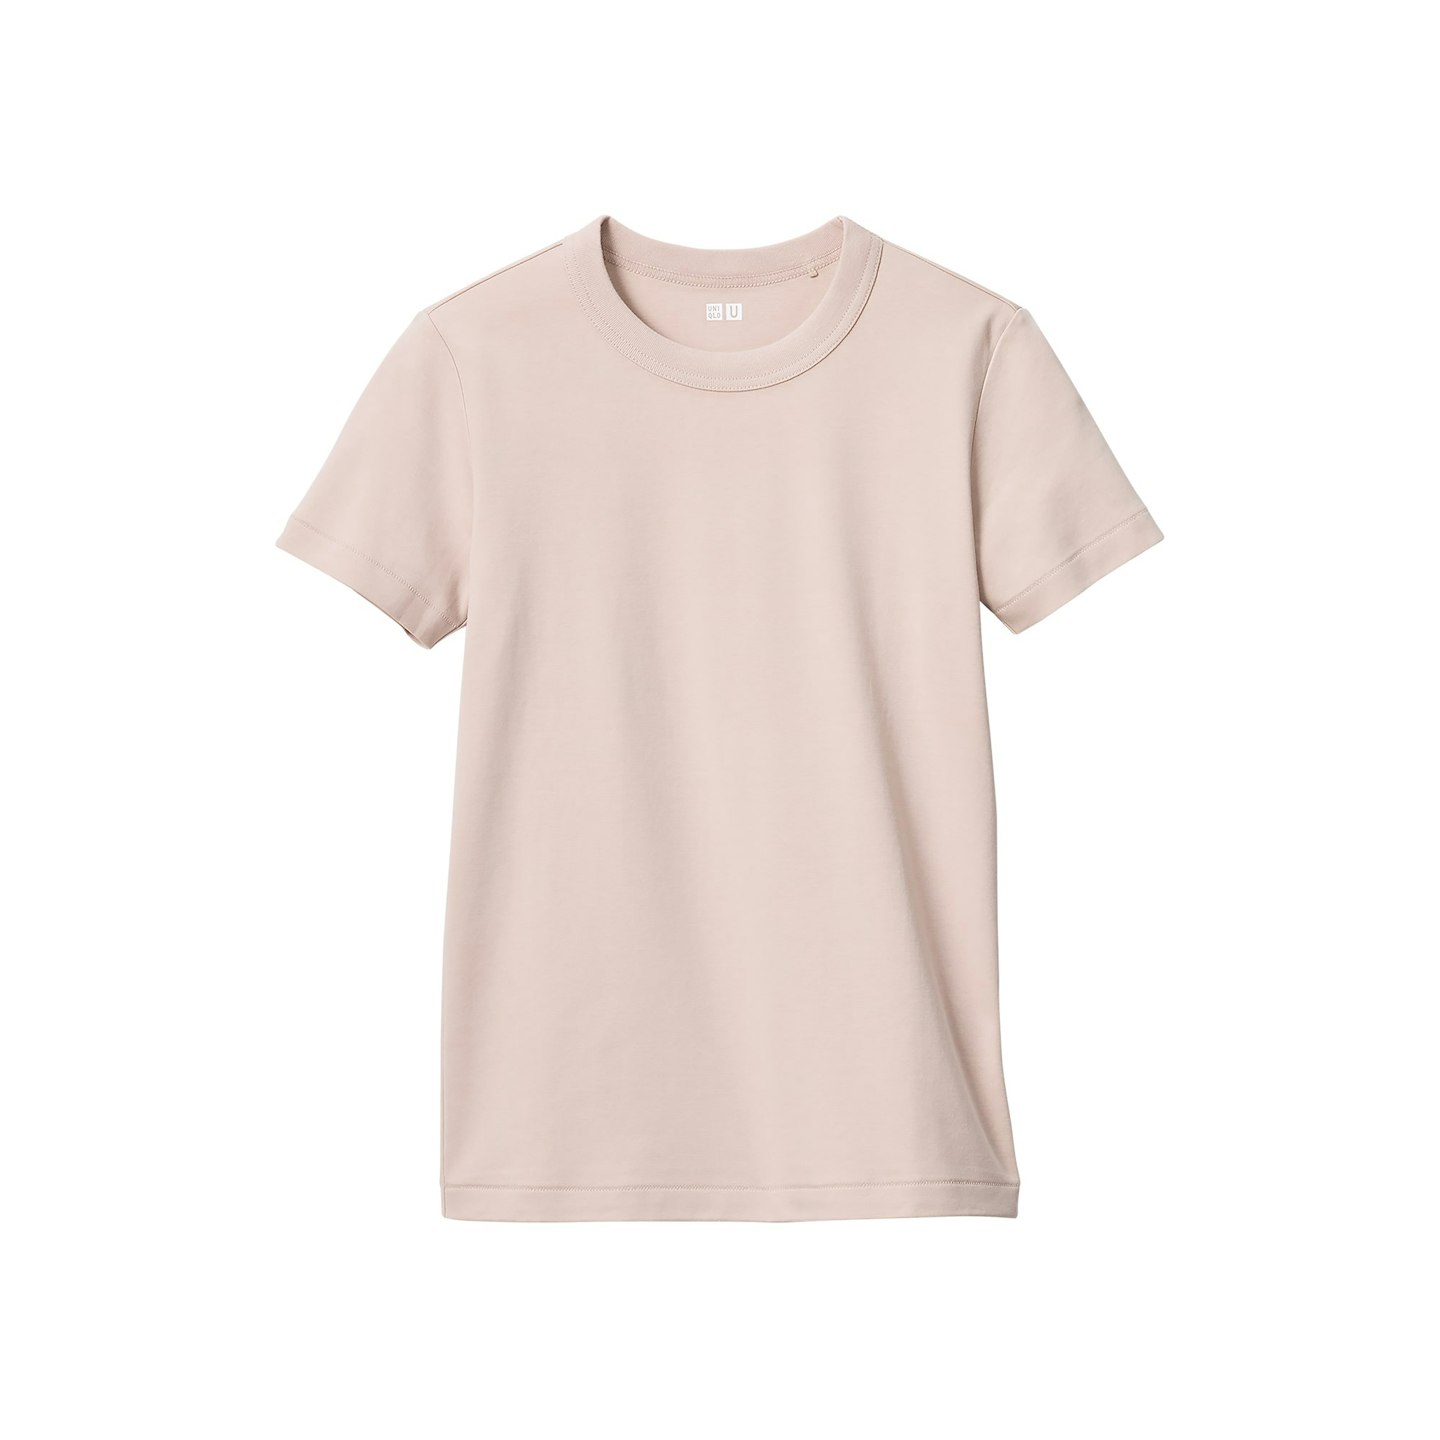 https://www.uniqlo.com/uk/en/product/100pct-cotton-crew-neck-t-shirt-465754.html?dwvar_465754_color=COL12&dwvar_465754_size=SMA002